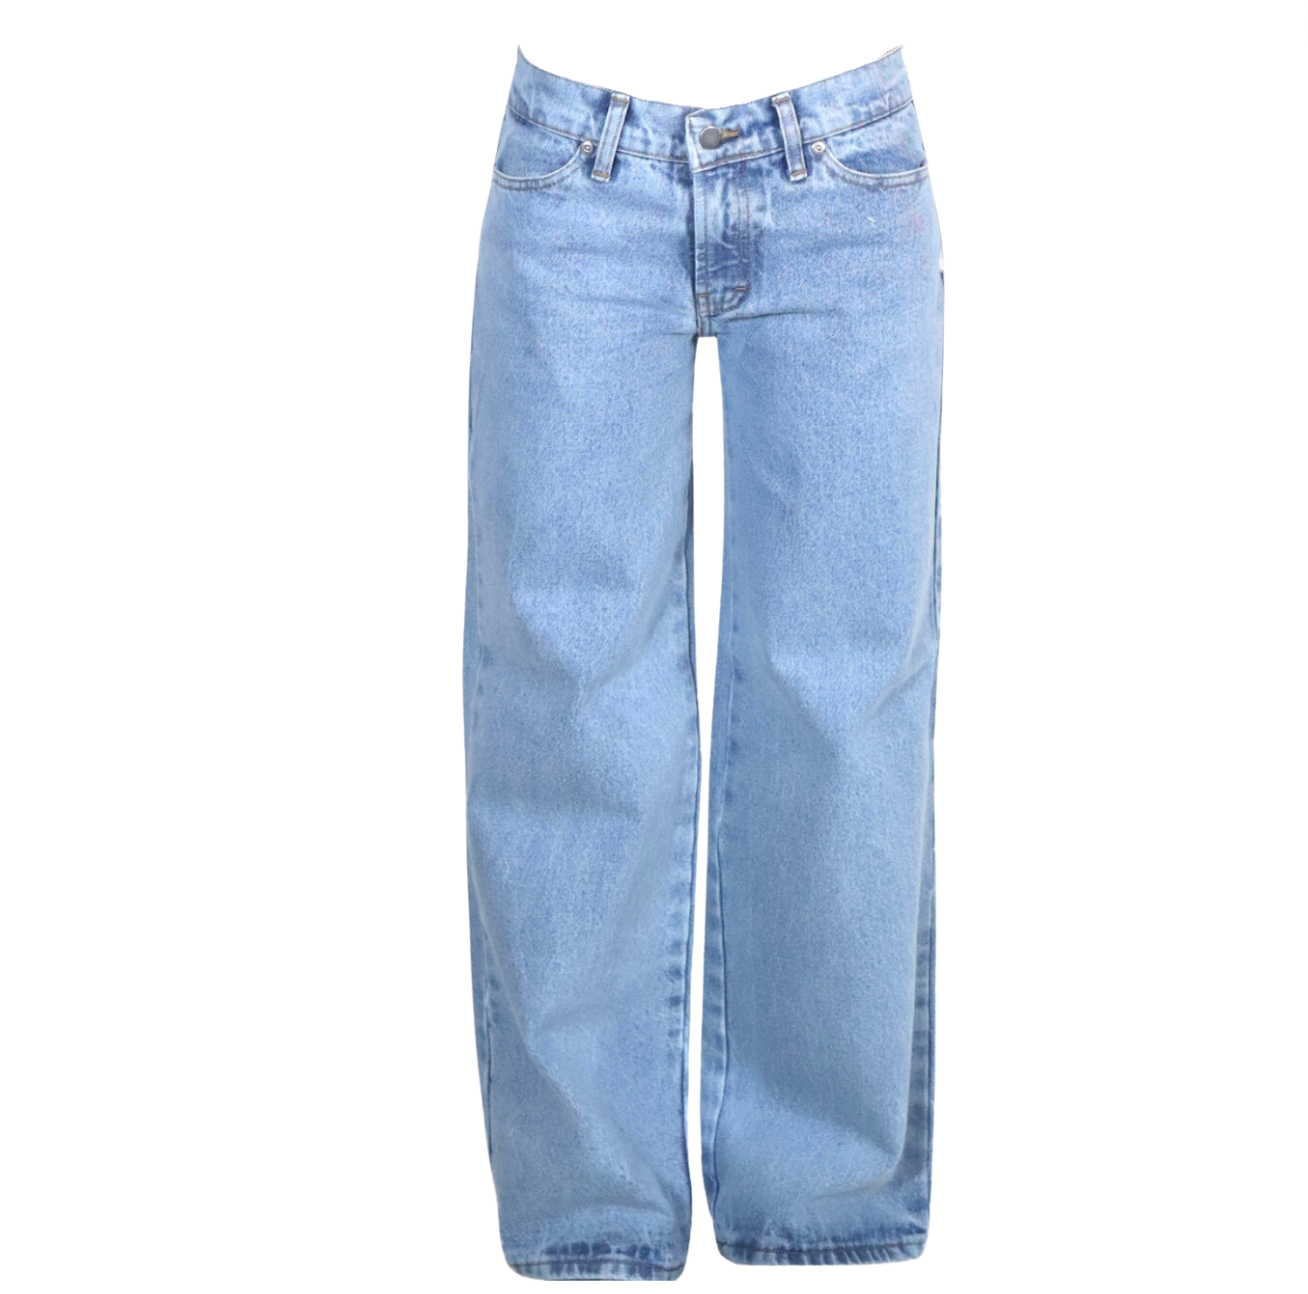 Jeans básicos (sin estrella)